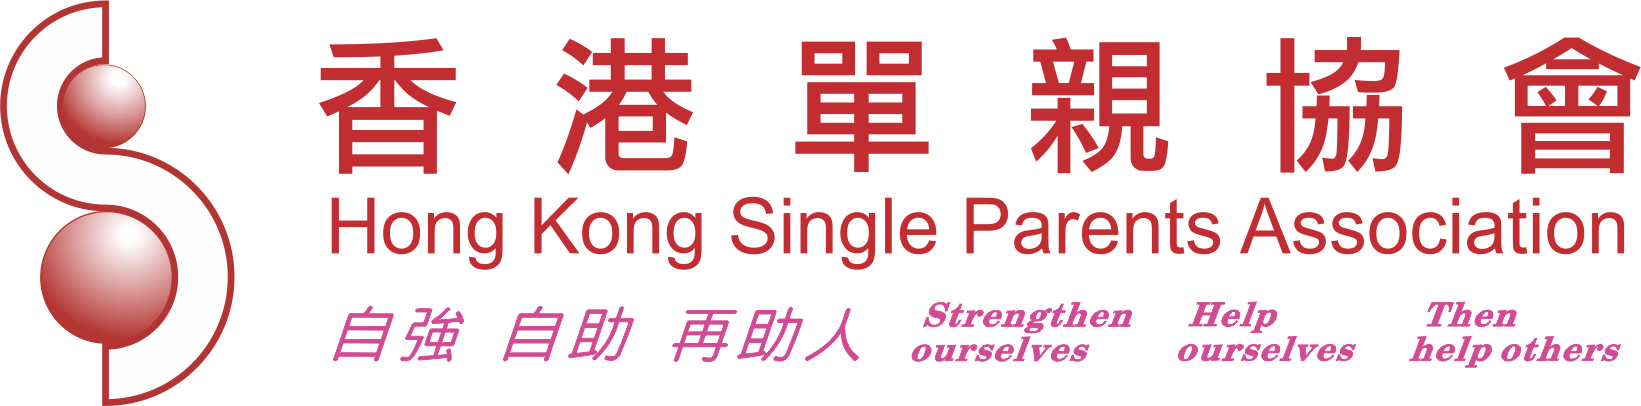 Hong Kong Single Parents Association